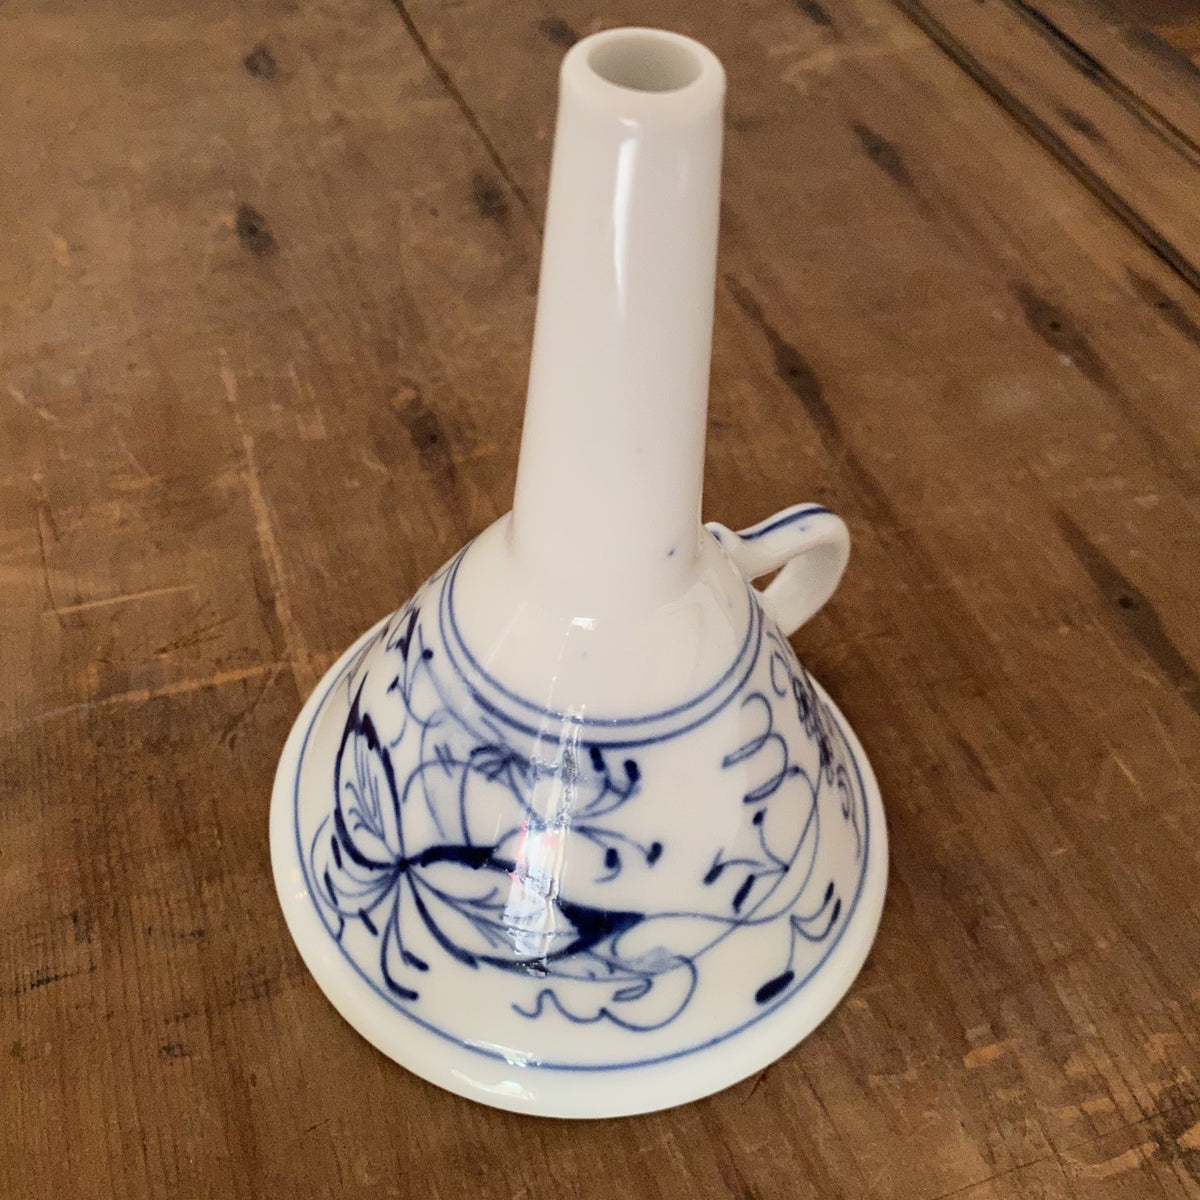 Med. Antique Blue Onion Porcelain Funnel - Germany